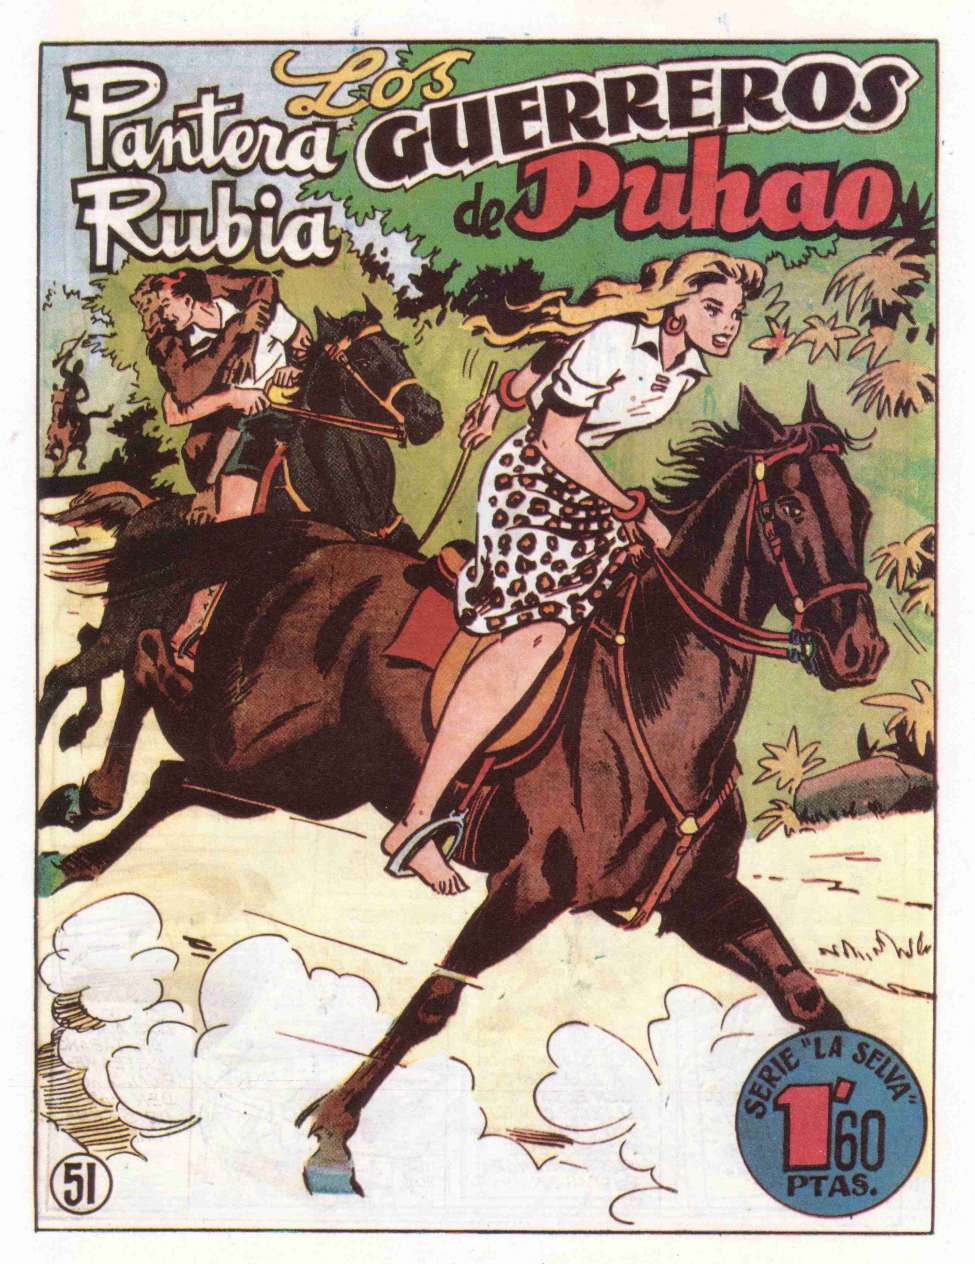 Book Cover For Pantera Rubia 39 - Los Guerreros De Puchao